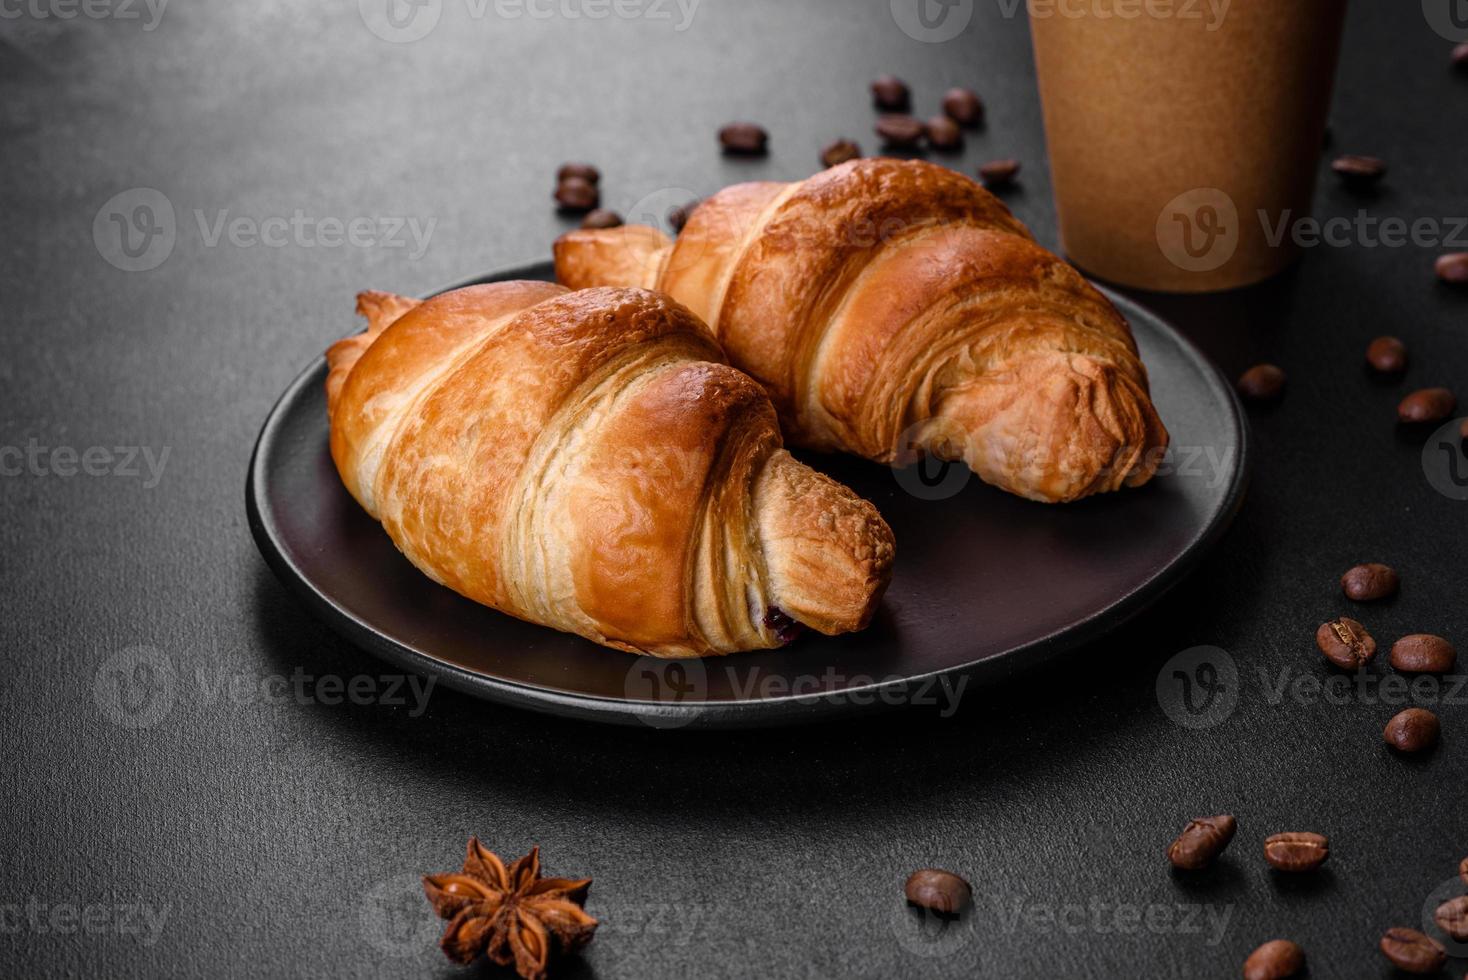 verse knapperige heerlijke franse croissant met een kopje geurige koffie foto